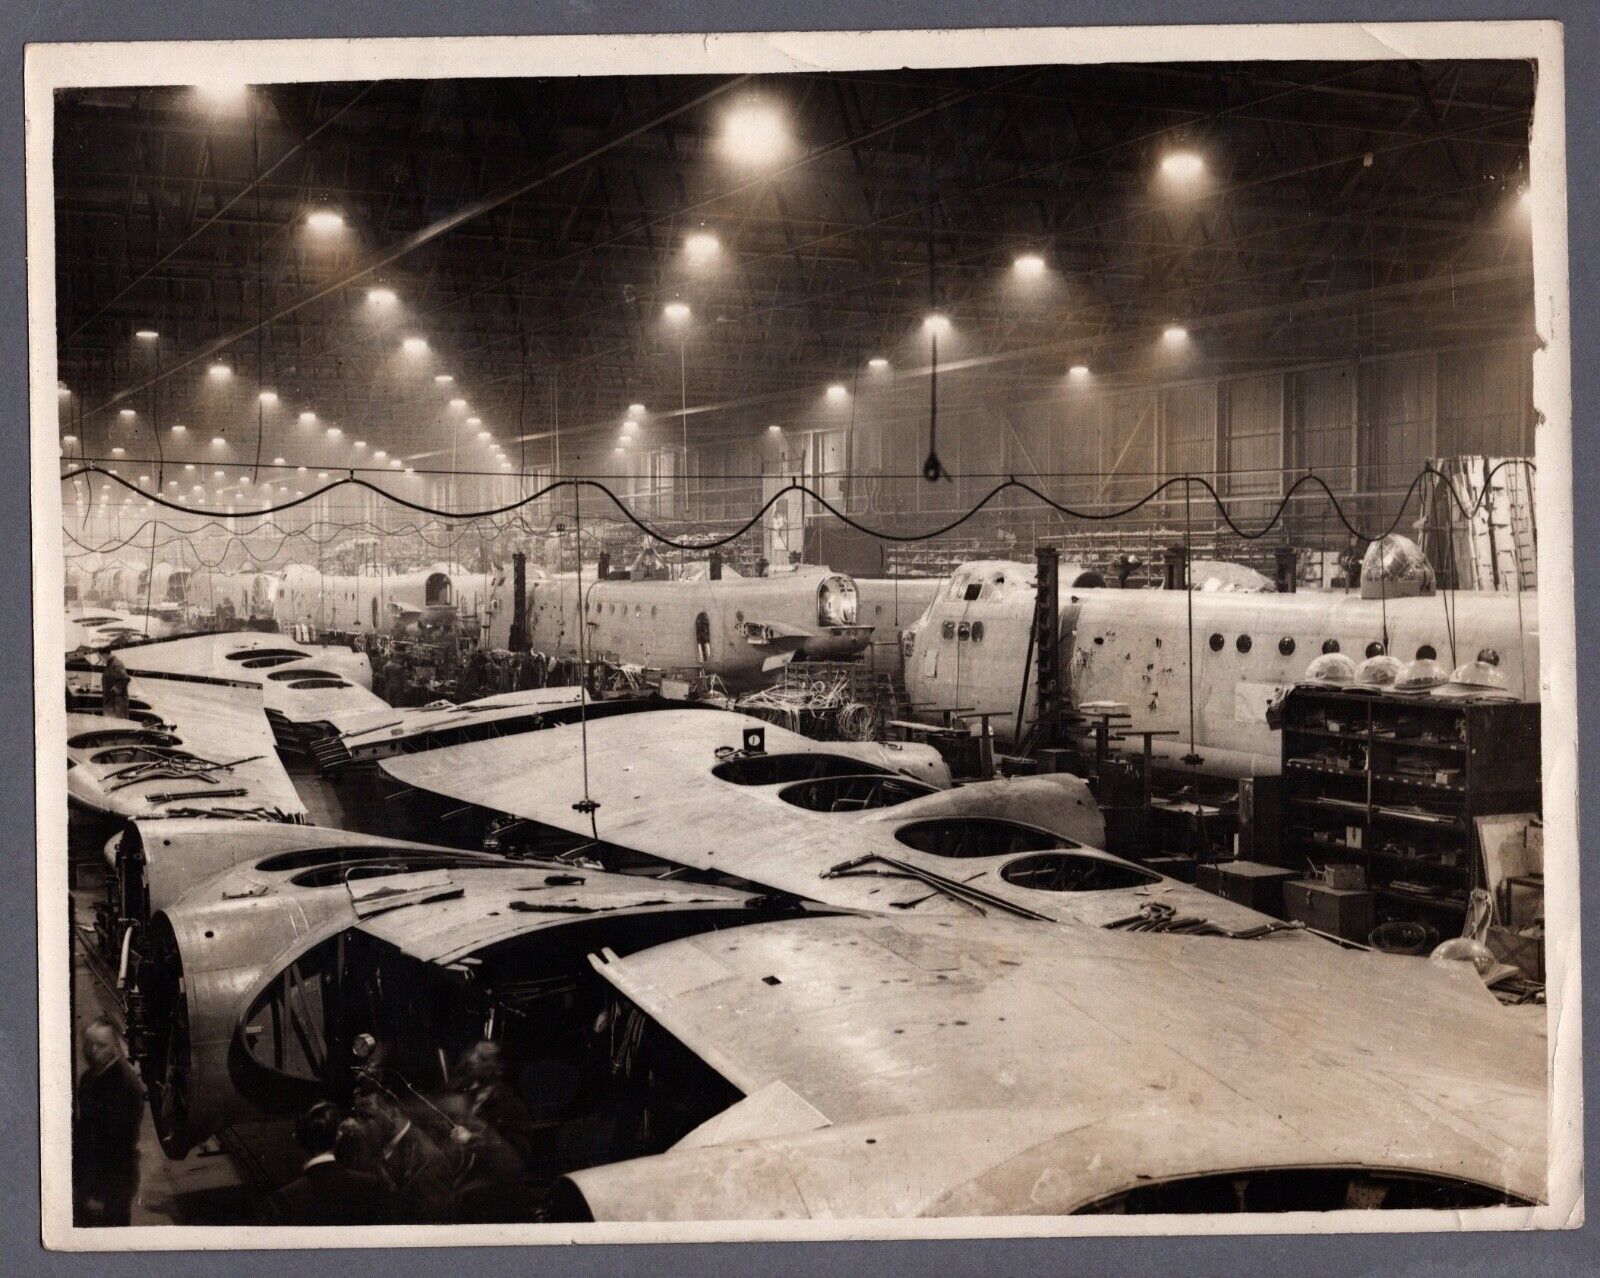 SHORT STIRLING BOMBER PRODUCTION LARGE ORIGINAL VINTAGE PRESS PHOTO WW2 RAF 15